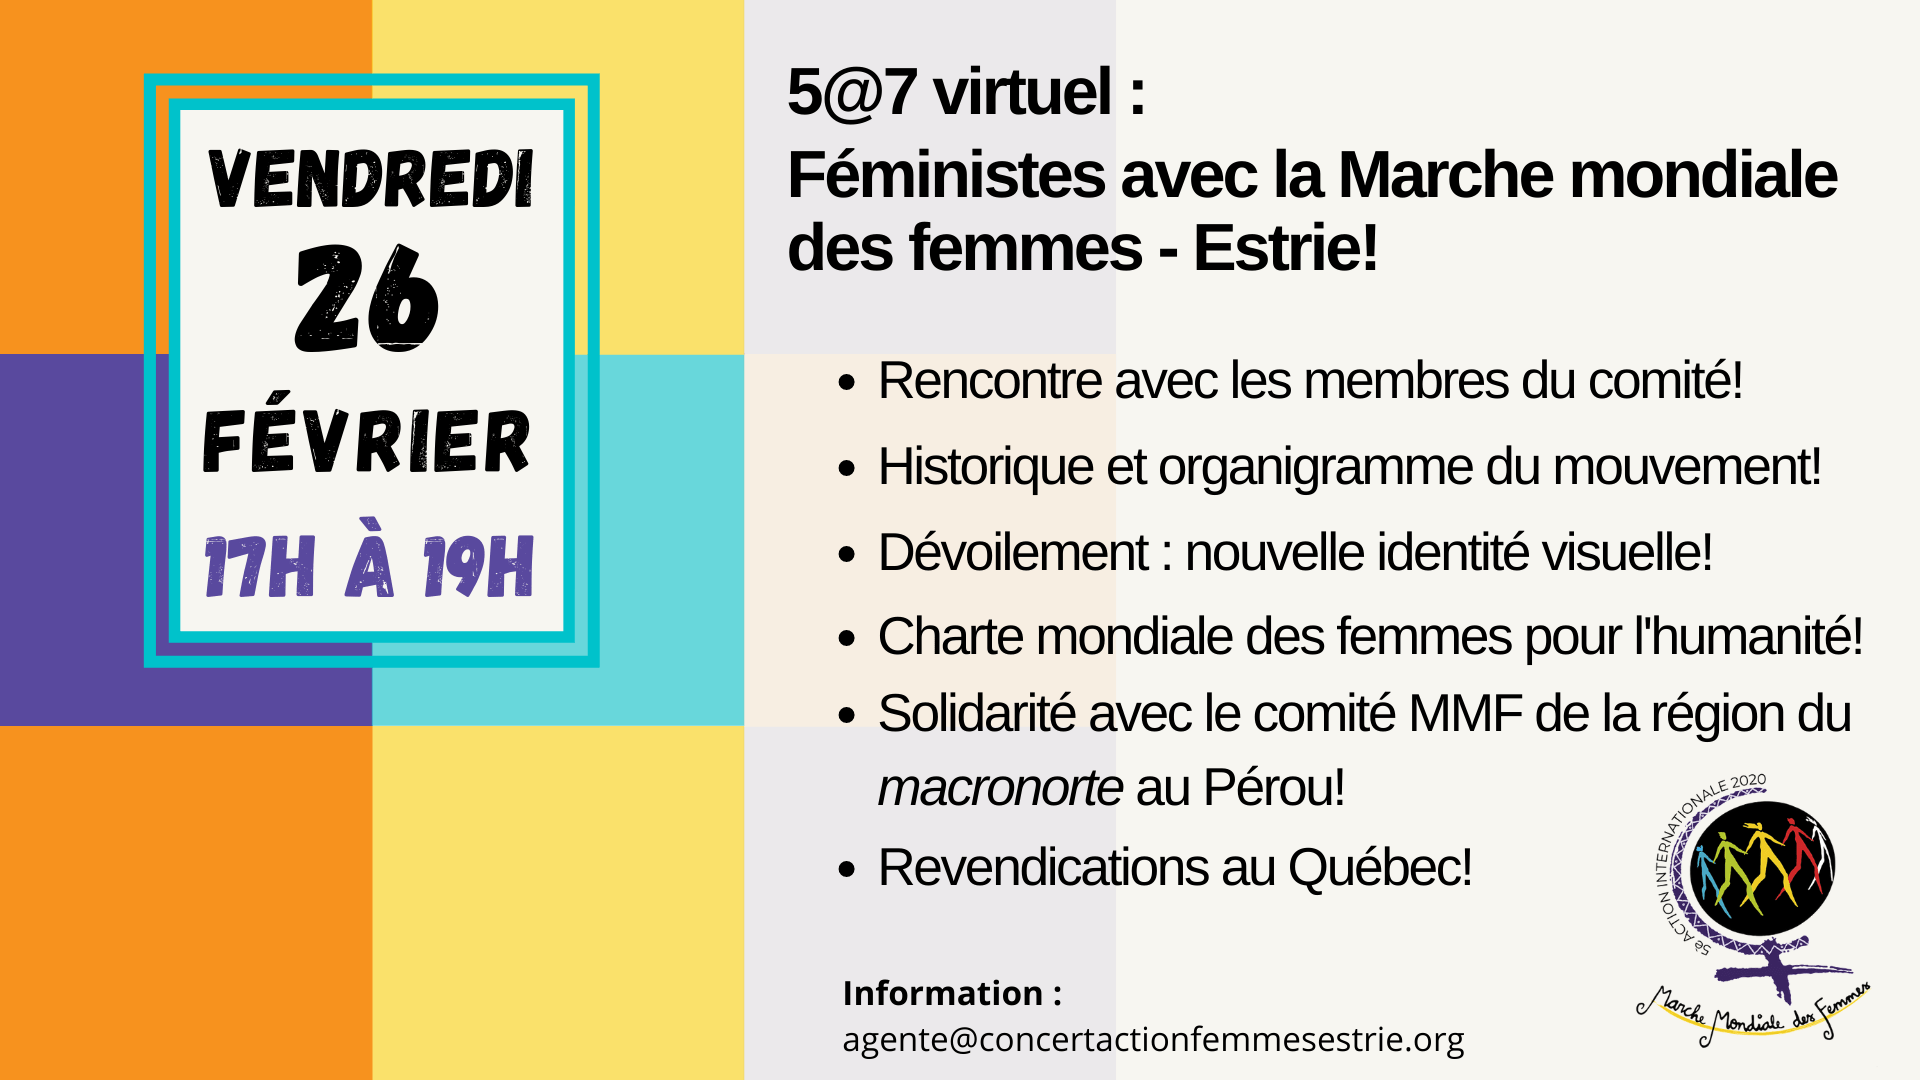 Invitation au 5 a 7 virtuel : Féministes avec les comité Marche mondiale des femmes - Estrie!